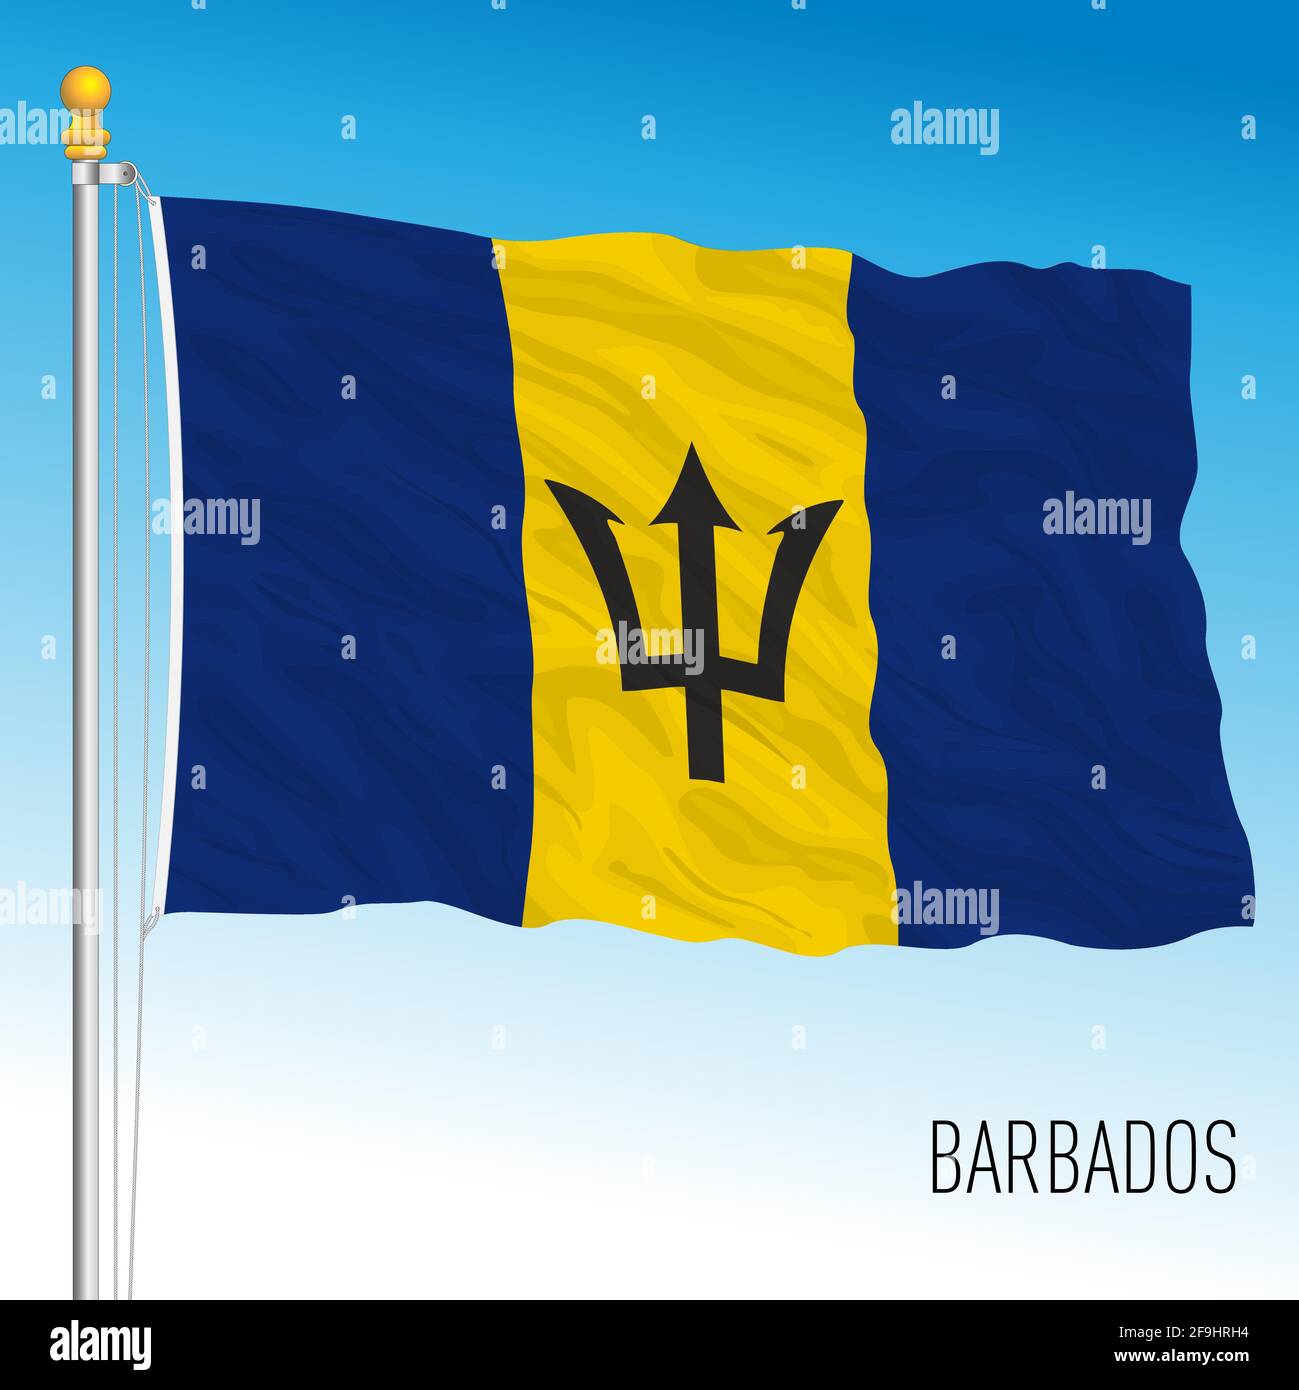 Offizielle Nationalflagge von Barbados, karibisches Land, Vektorgrafik Stock Vektor